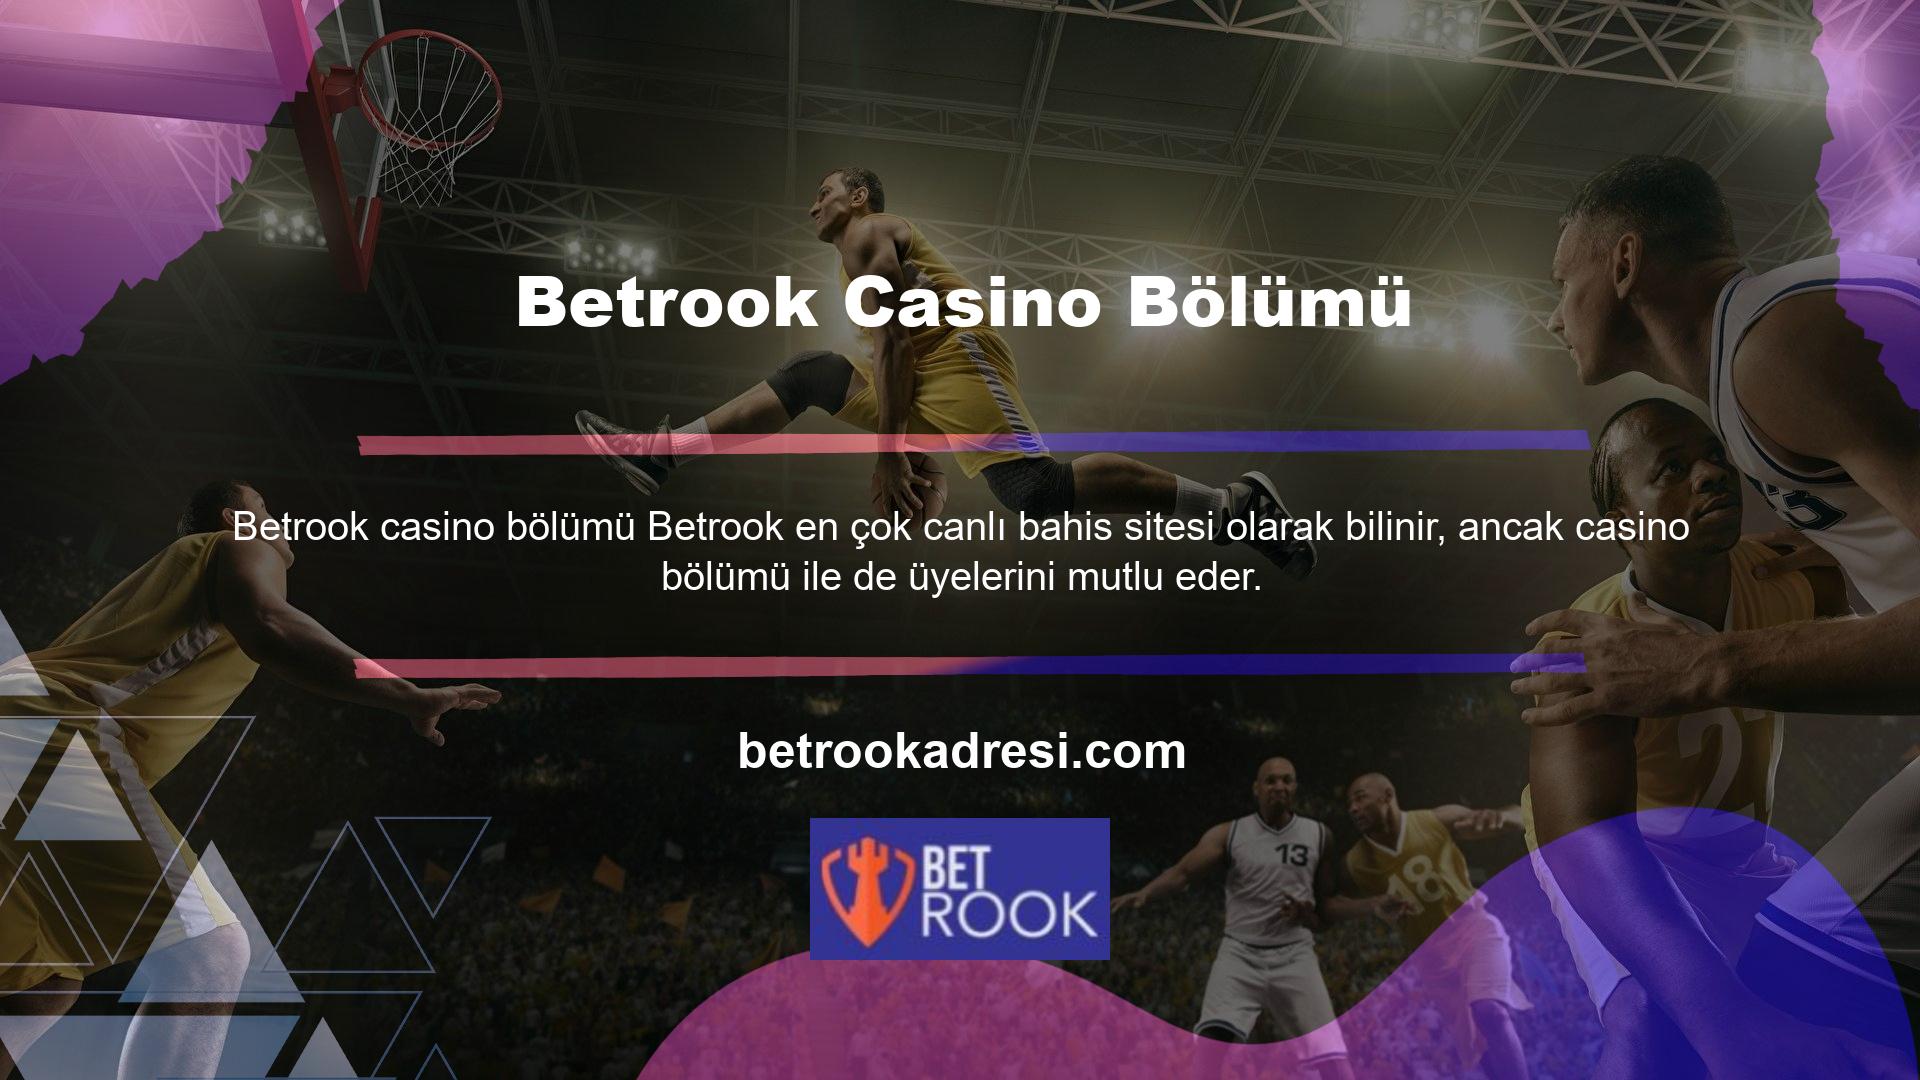 Betrook casino bölümünde yer alan bonuslar, kullanım kolaylığı ve bonus çevriminin basitliği bu bölümün en çekici özelliklerinden biri gibi görünüyor